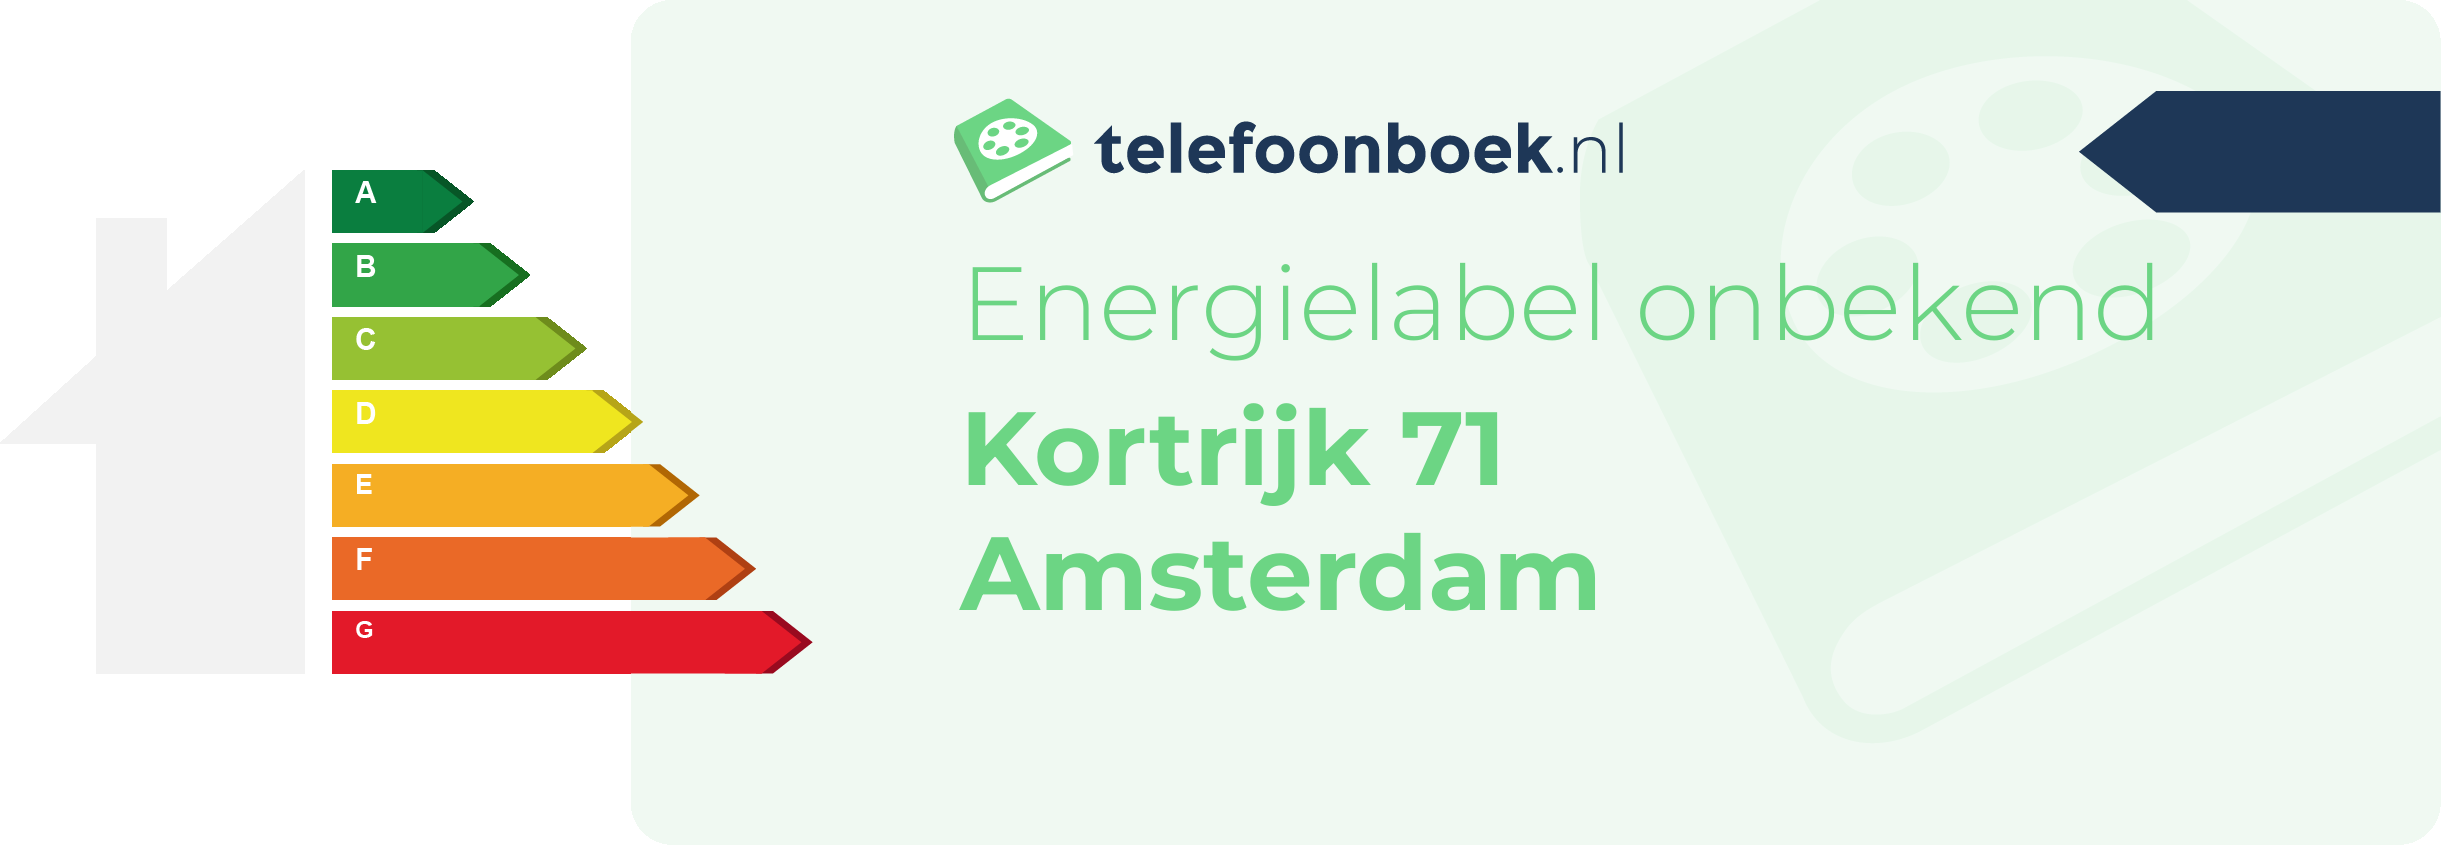 Energielabel Kortrijk 71 Amsterdam